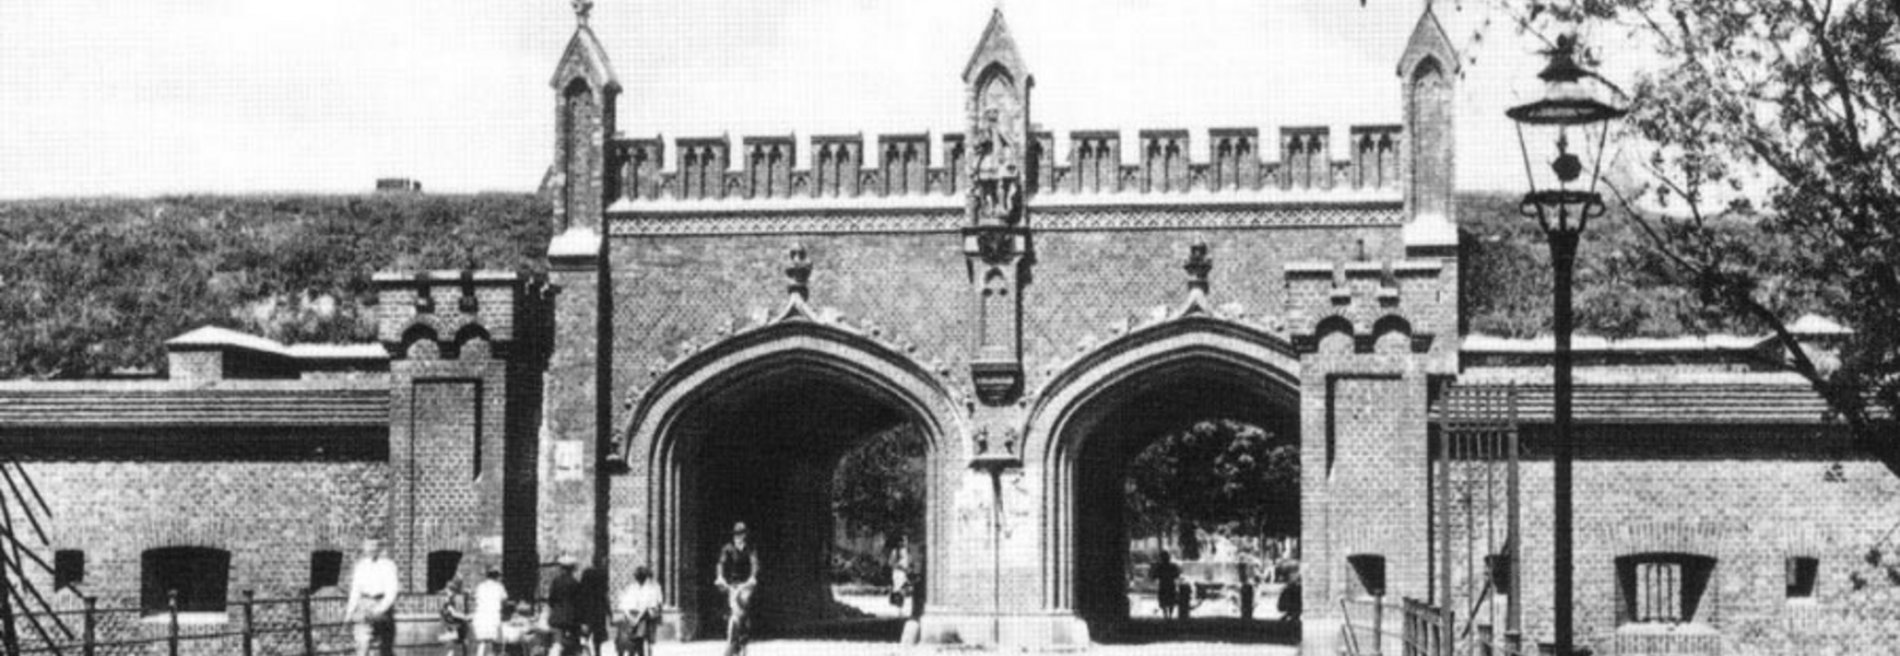 Старые и новые Фридландские ворота в Кёнигсберге — Калининграде